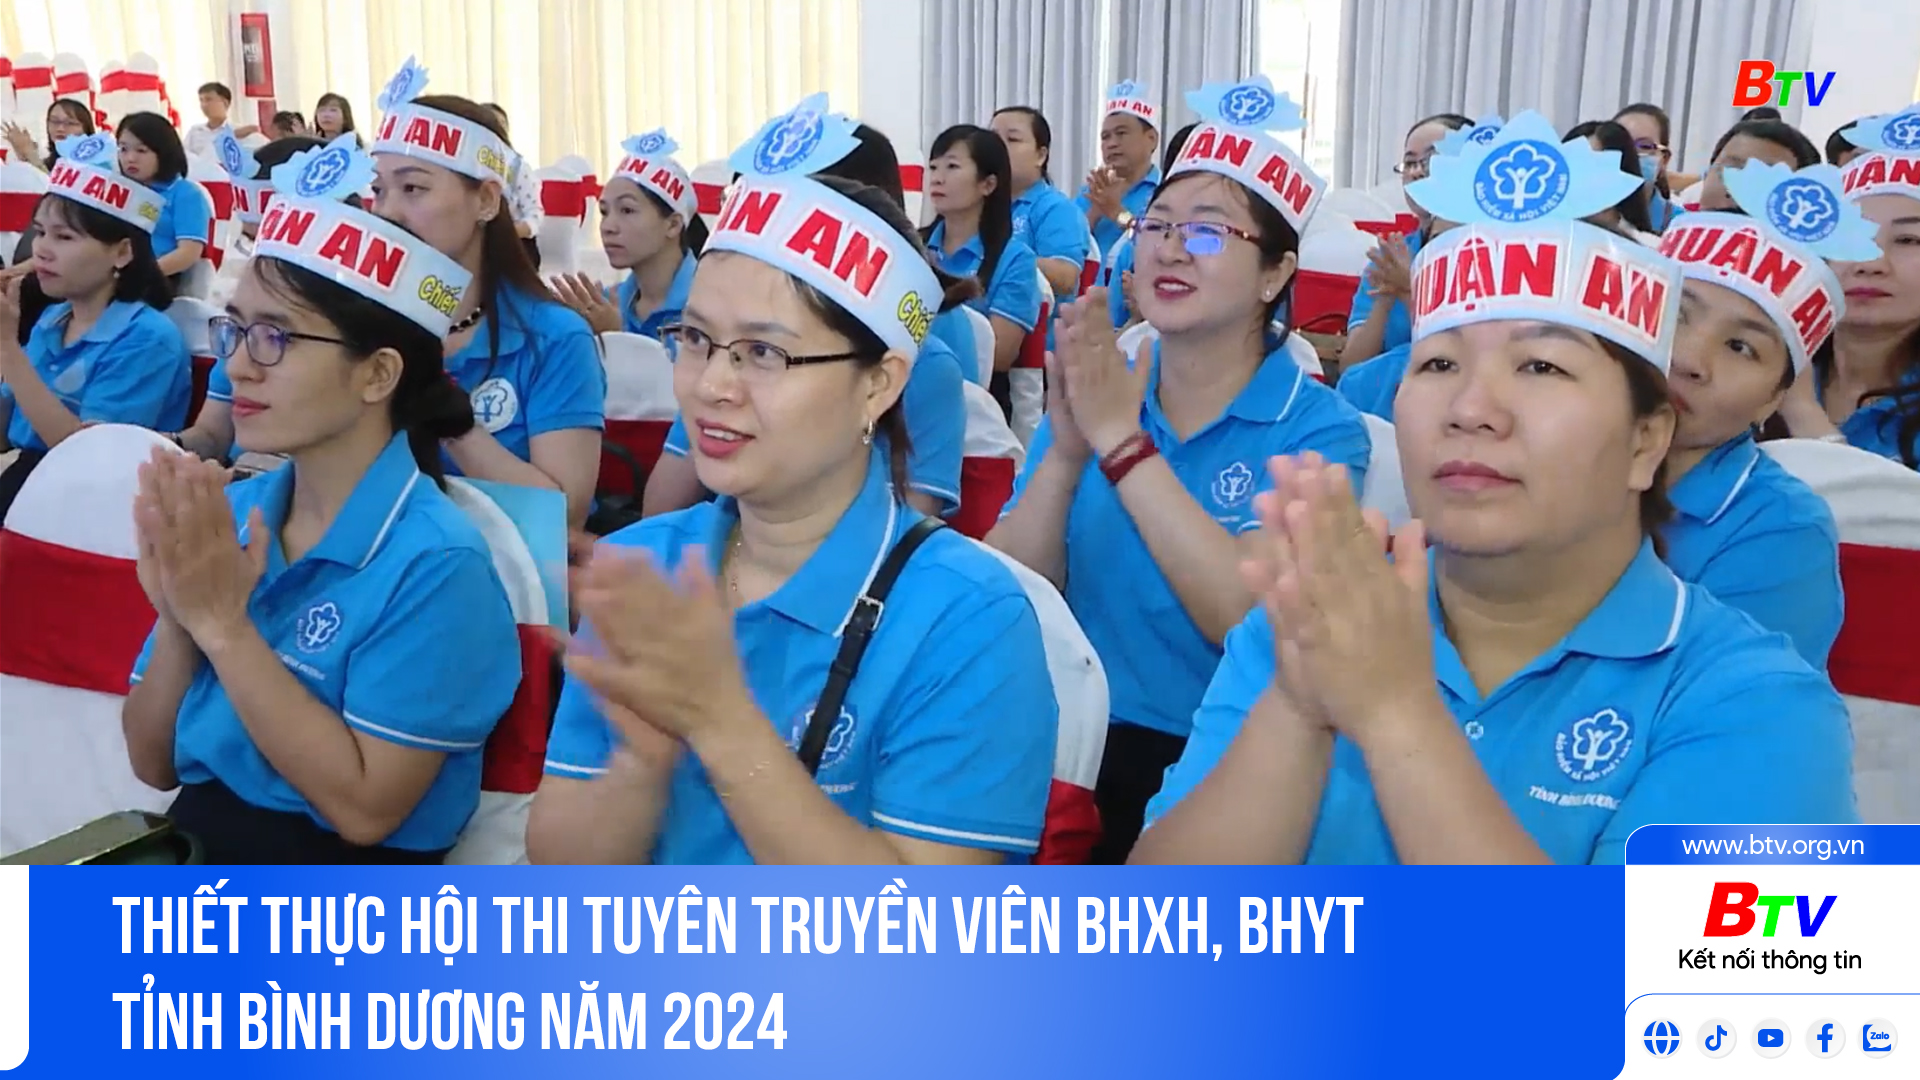 Thiết thực Hội thi Tuyên truyền viên BHXH, BHYT tỉnh Bình Dương năm 2024